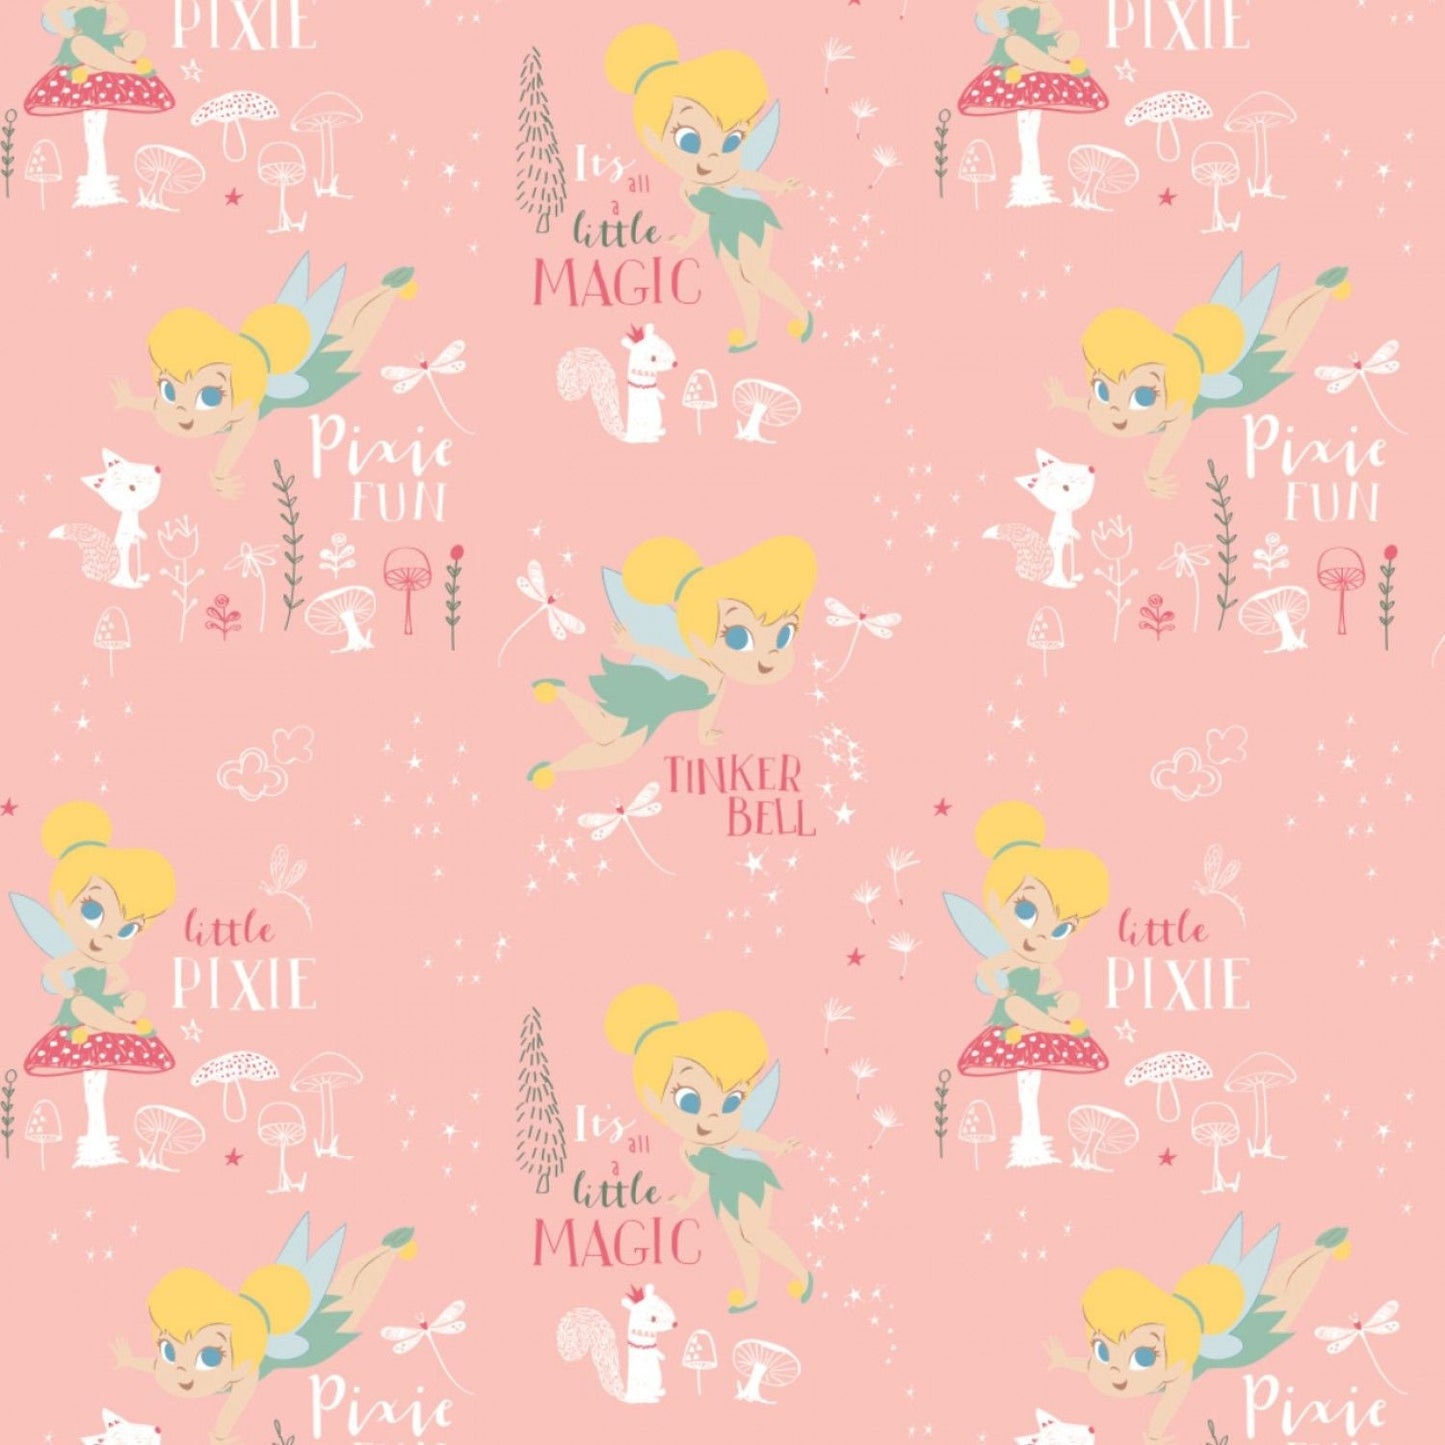 Peter Pan & Tinker Bell Tinker Bell Pixie Magic Lt Pink 85400301-2 Cotton Woven Fabric